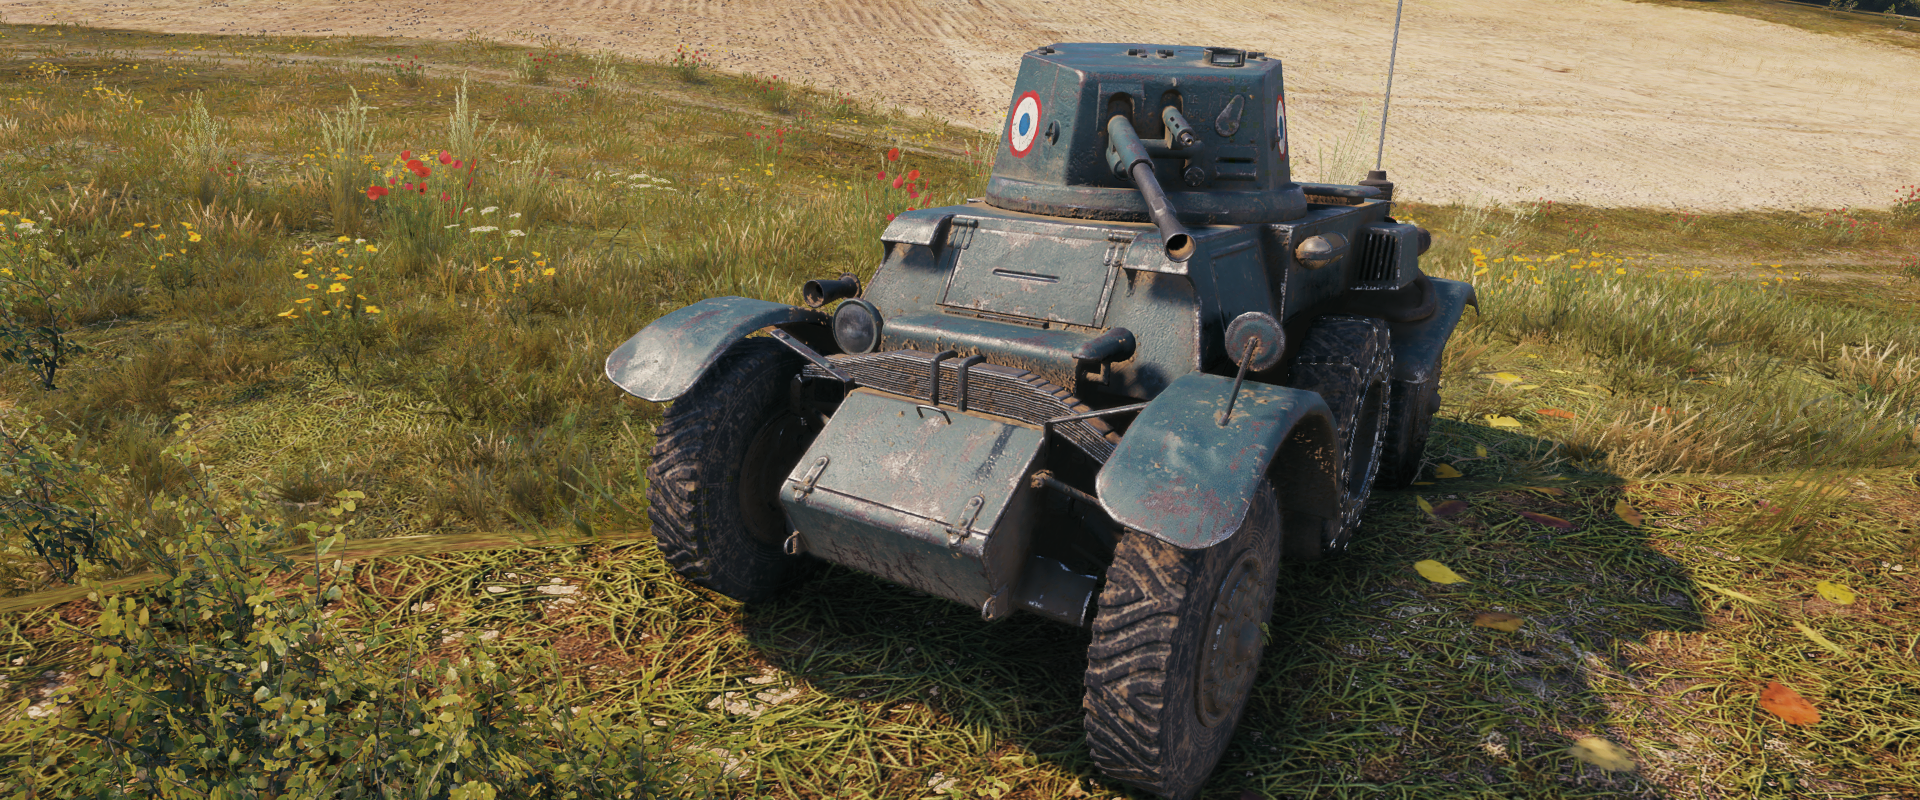 Tier II-es prémium kerekes jármű: AM 39 Gendron-Somua